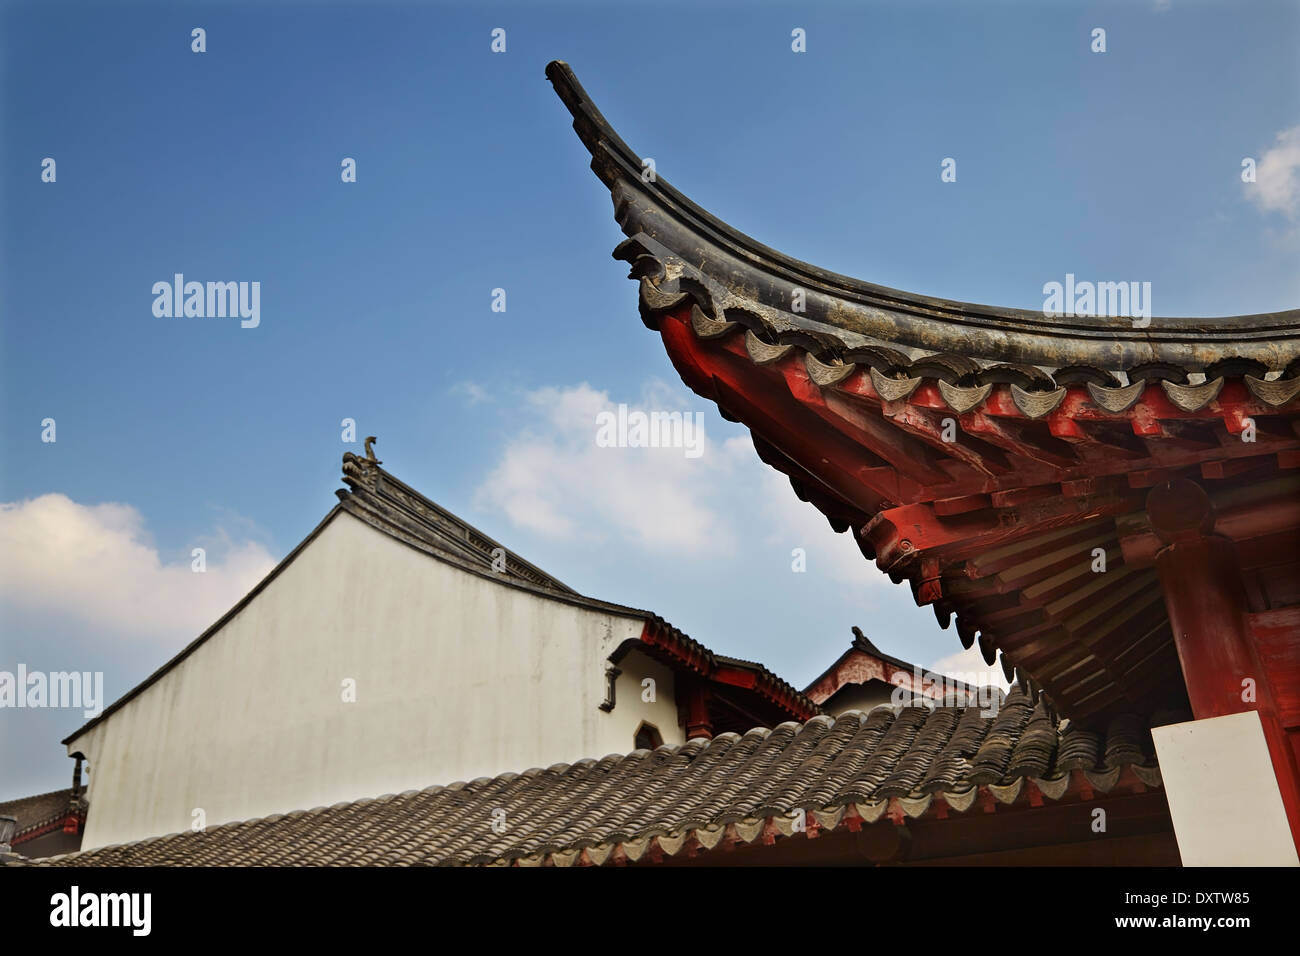 Éves volantes sur le toit du temple confucianiste, à Shanghai, en Chine. Banque D'Images